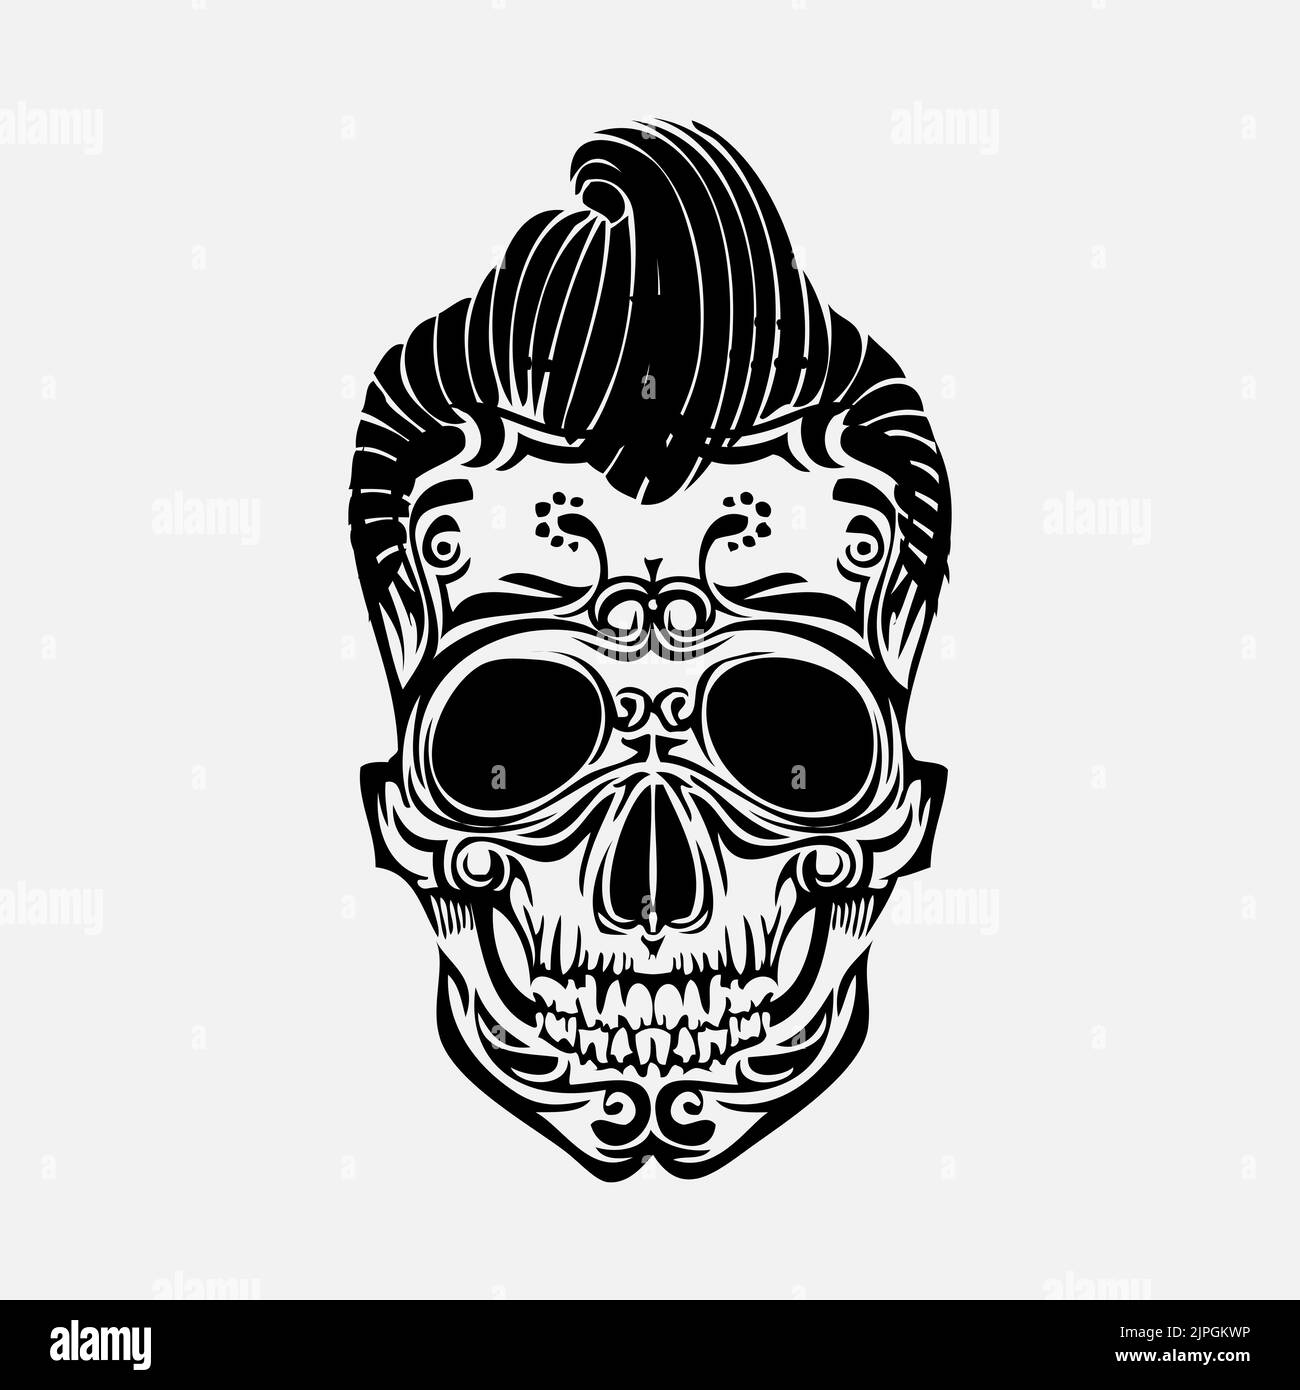 Skull tattoo design. Skull illustration. Skull design with some hair on top Stock Photo